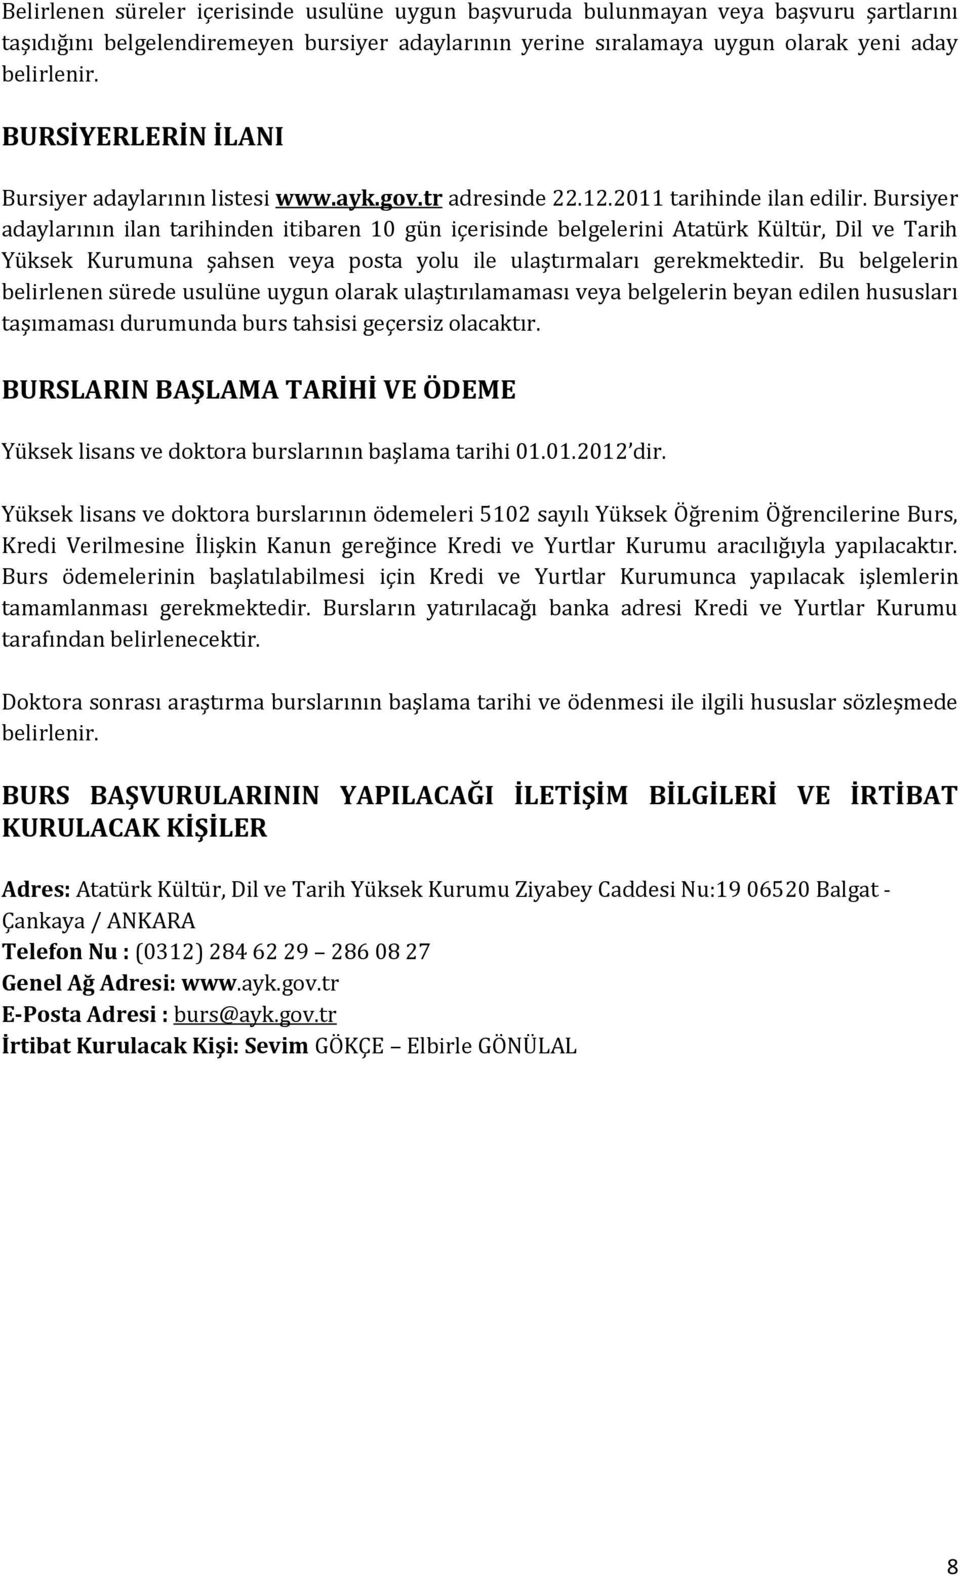 Bursiyer adaylarının ilan tarihinden itibaren 10 gün içerisinde belgelerini Atatürk Kültür, Dil ve Tarih Yüksek Kurumuna şahsen veya posta yolu ile ulaştırmaları gerekmektedir.